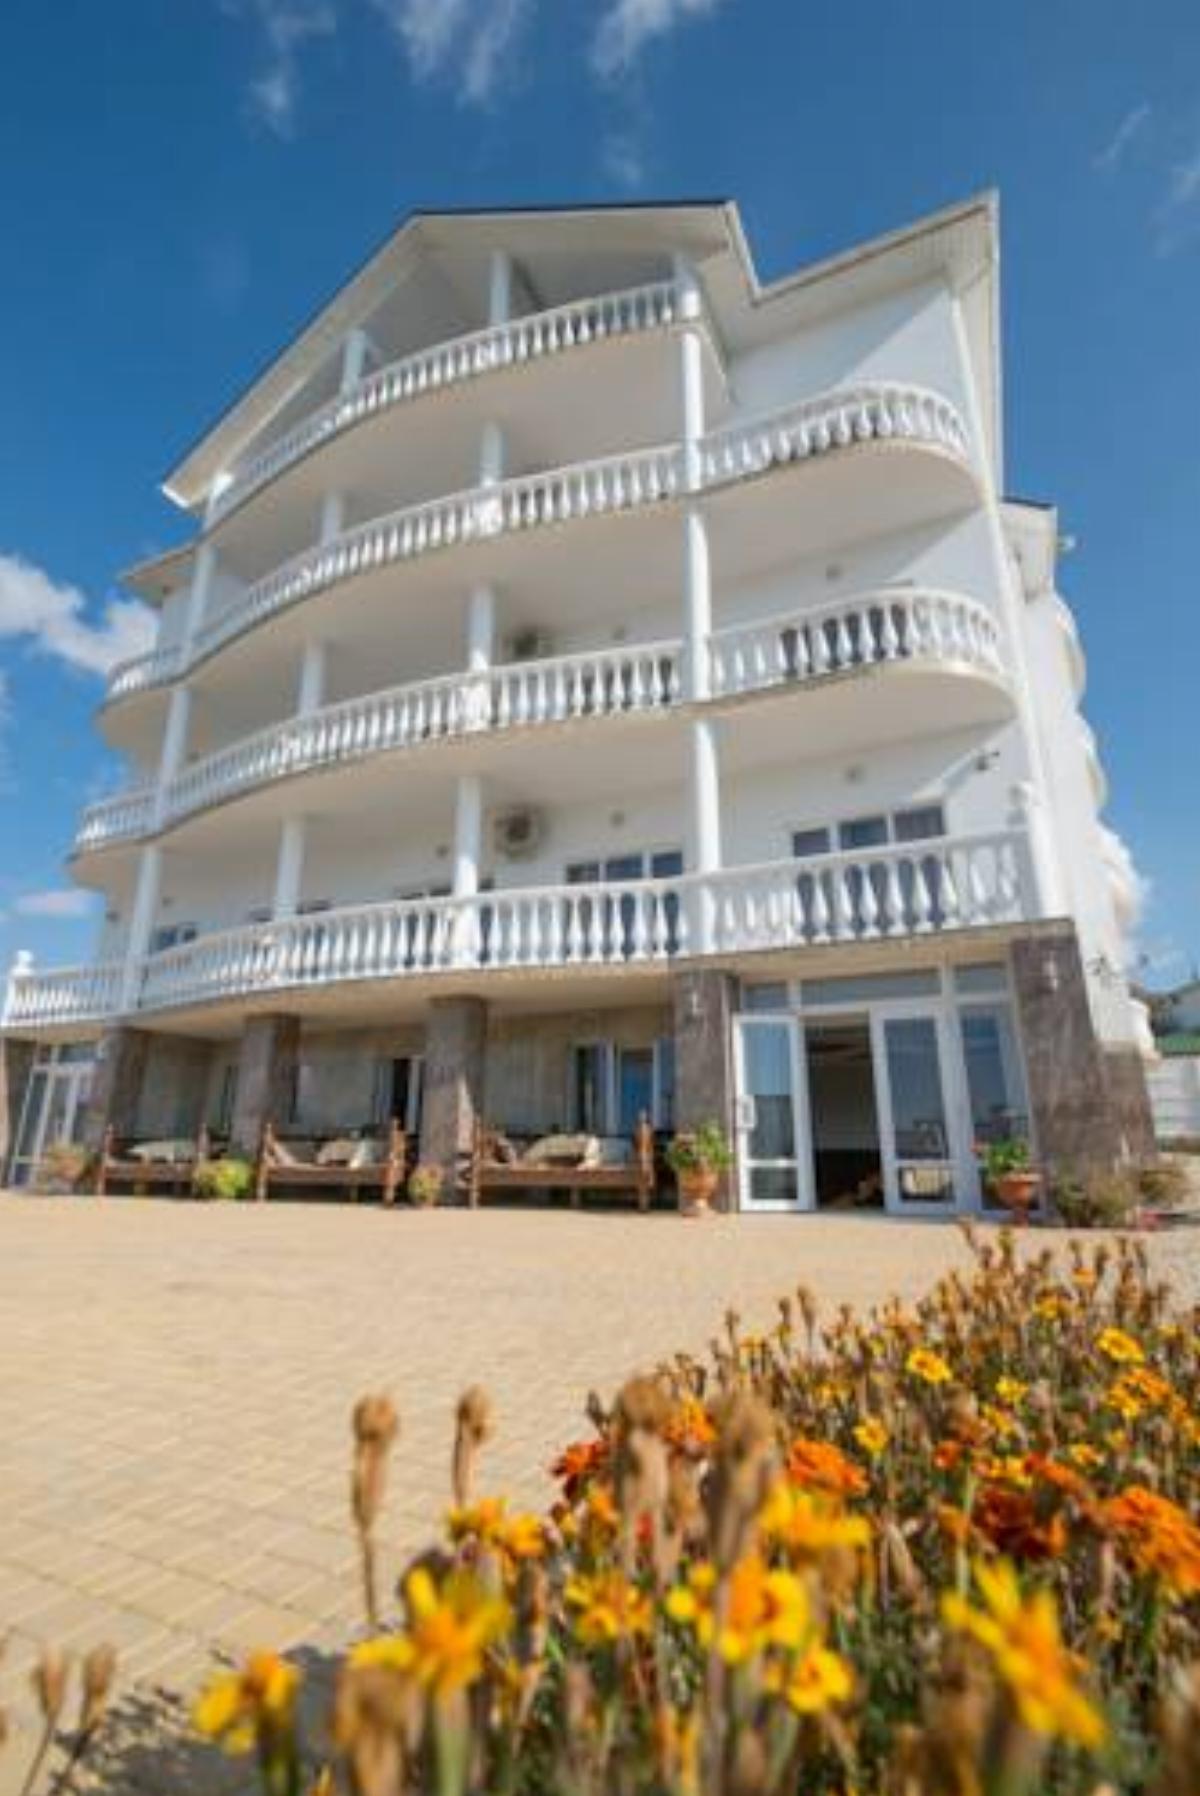 Hayat Hotel Hotel Koktebel Crimea